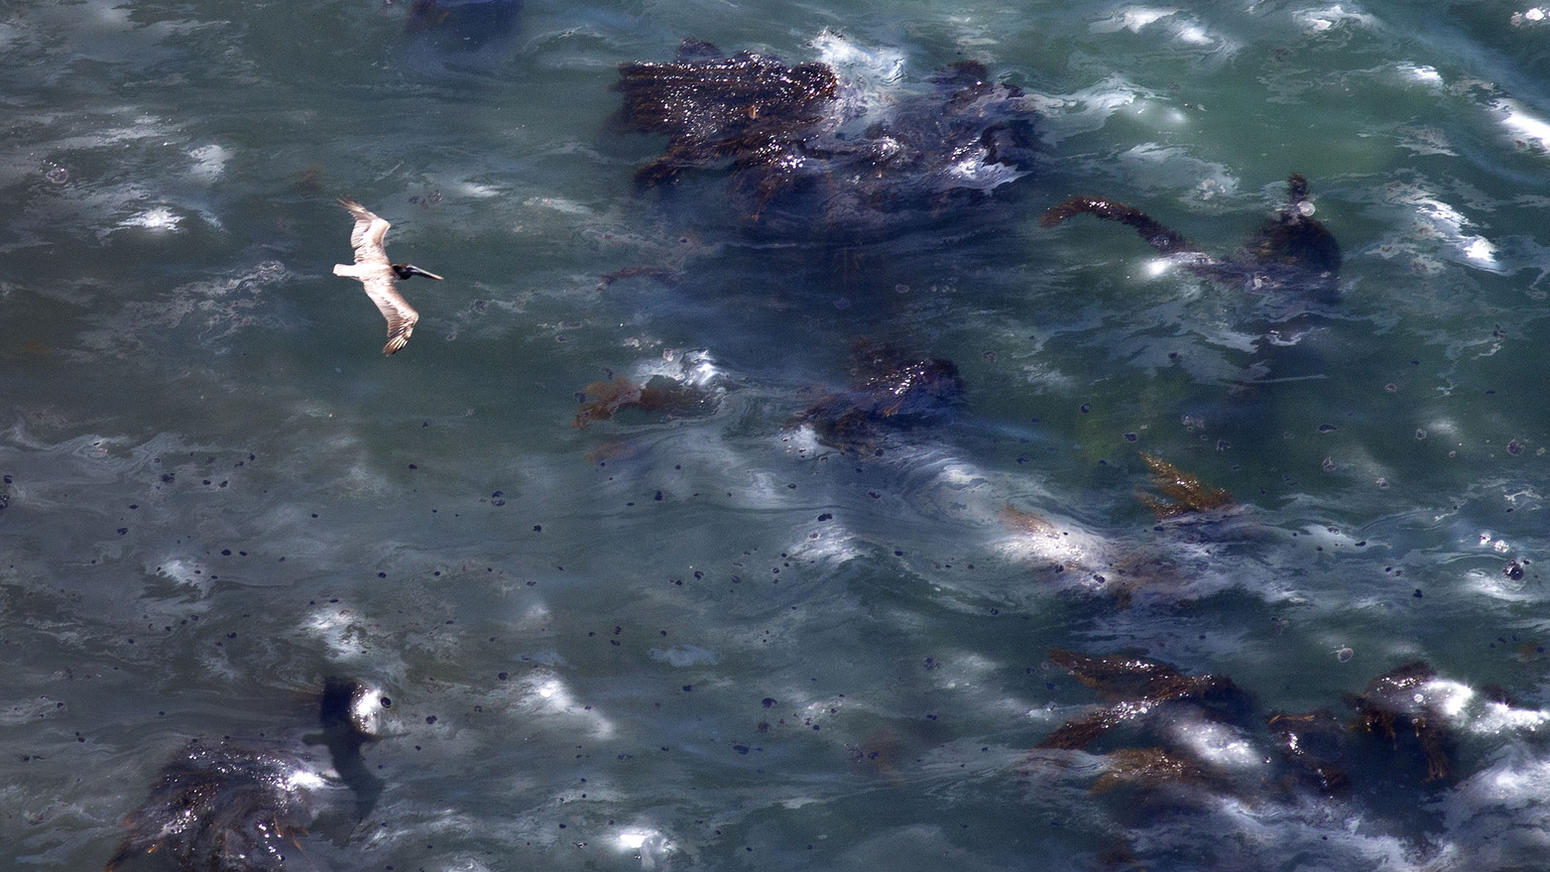 Oil spill off Santa Barbara coast